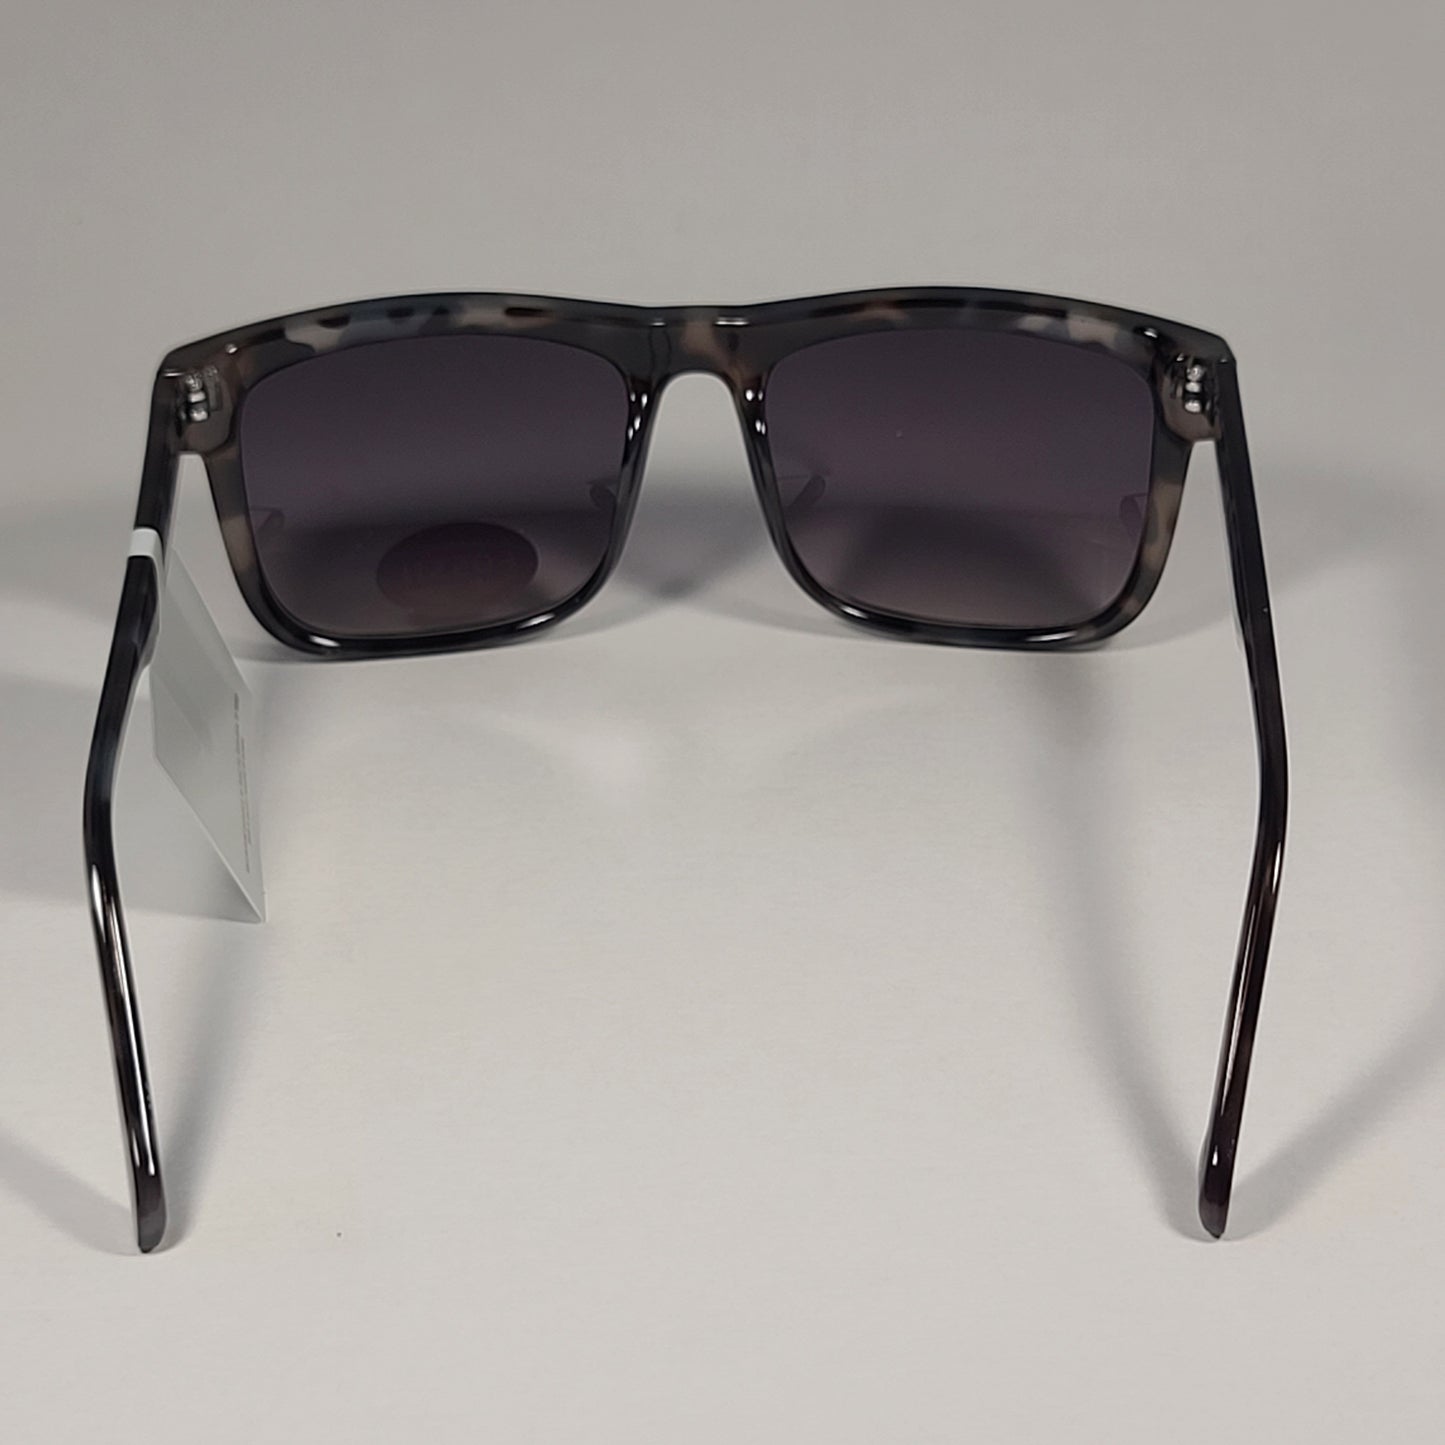 Fossil FM145 Men’s Square Sunglasses White Tortoise Frame Gray Gradient Lens - Sunglasses